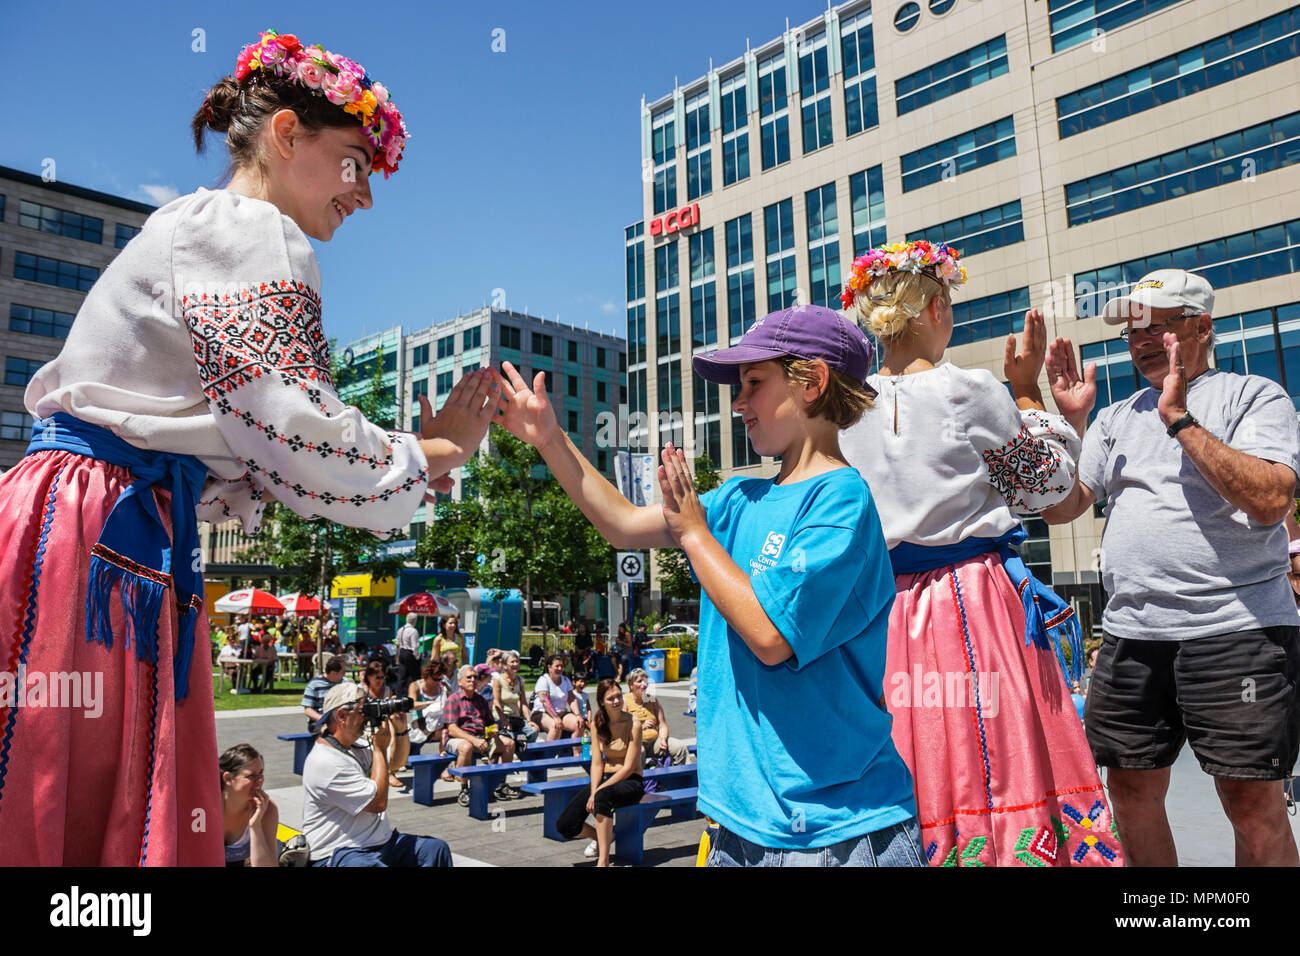 Quebec Canadá, Boulevard Charest, Jardin Saint Roch, familia familias padres hijos niños, Festival, feria de festivales, escenario, bailarín ucraniano, enseñar un Foto de stock